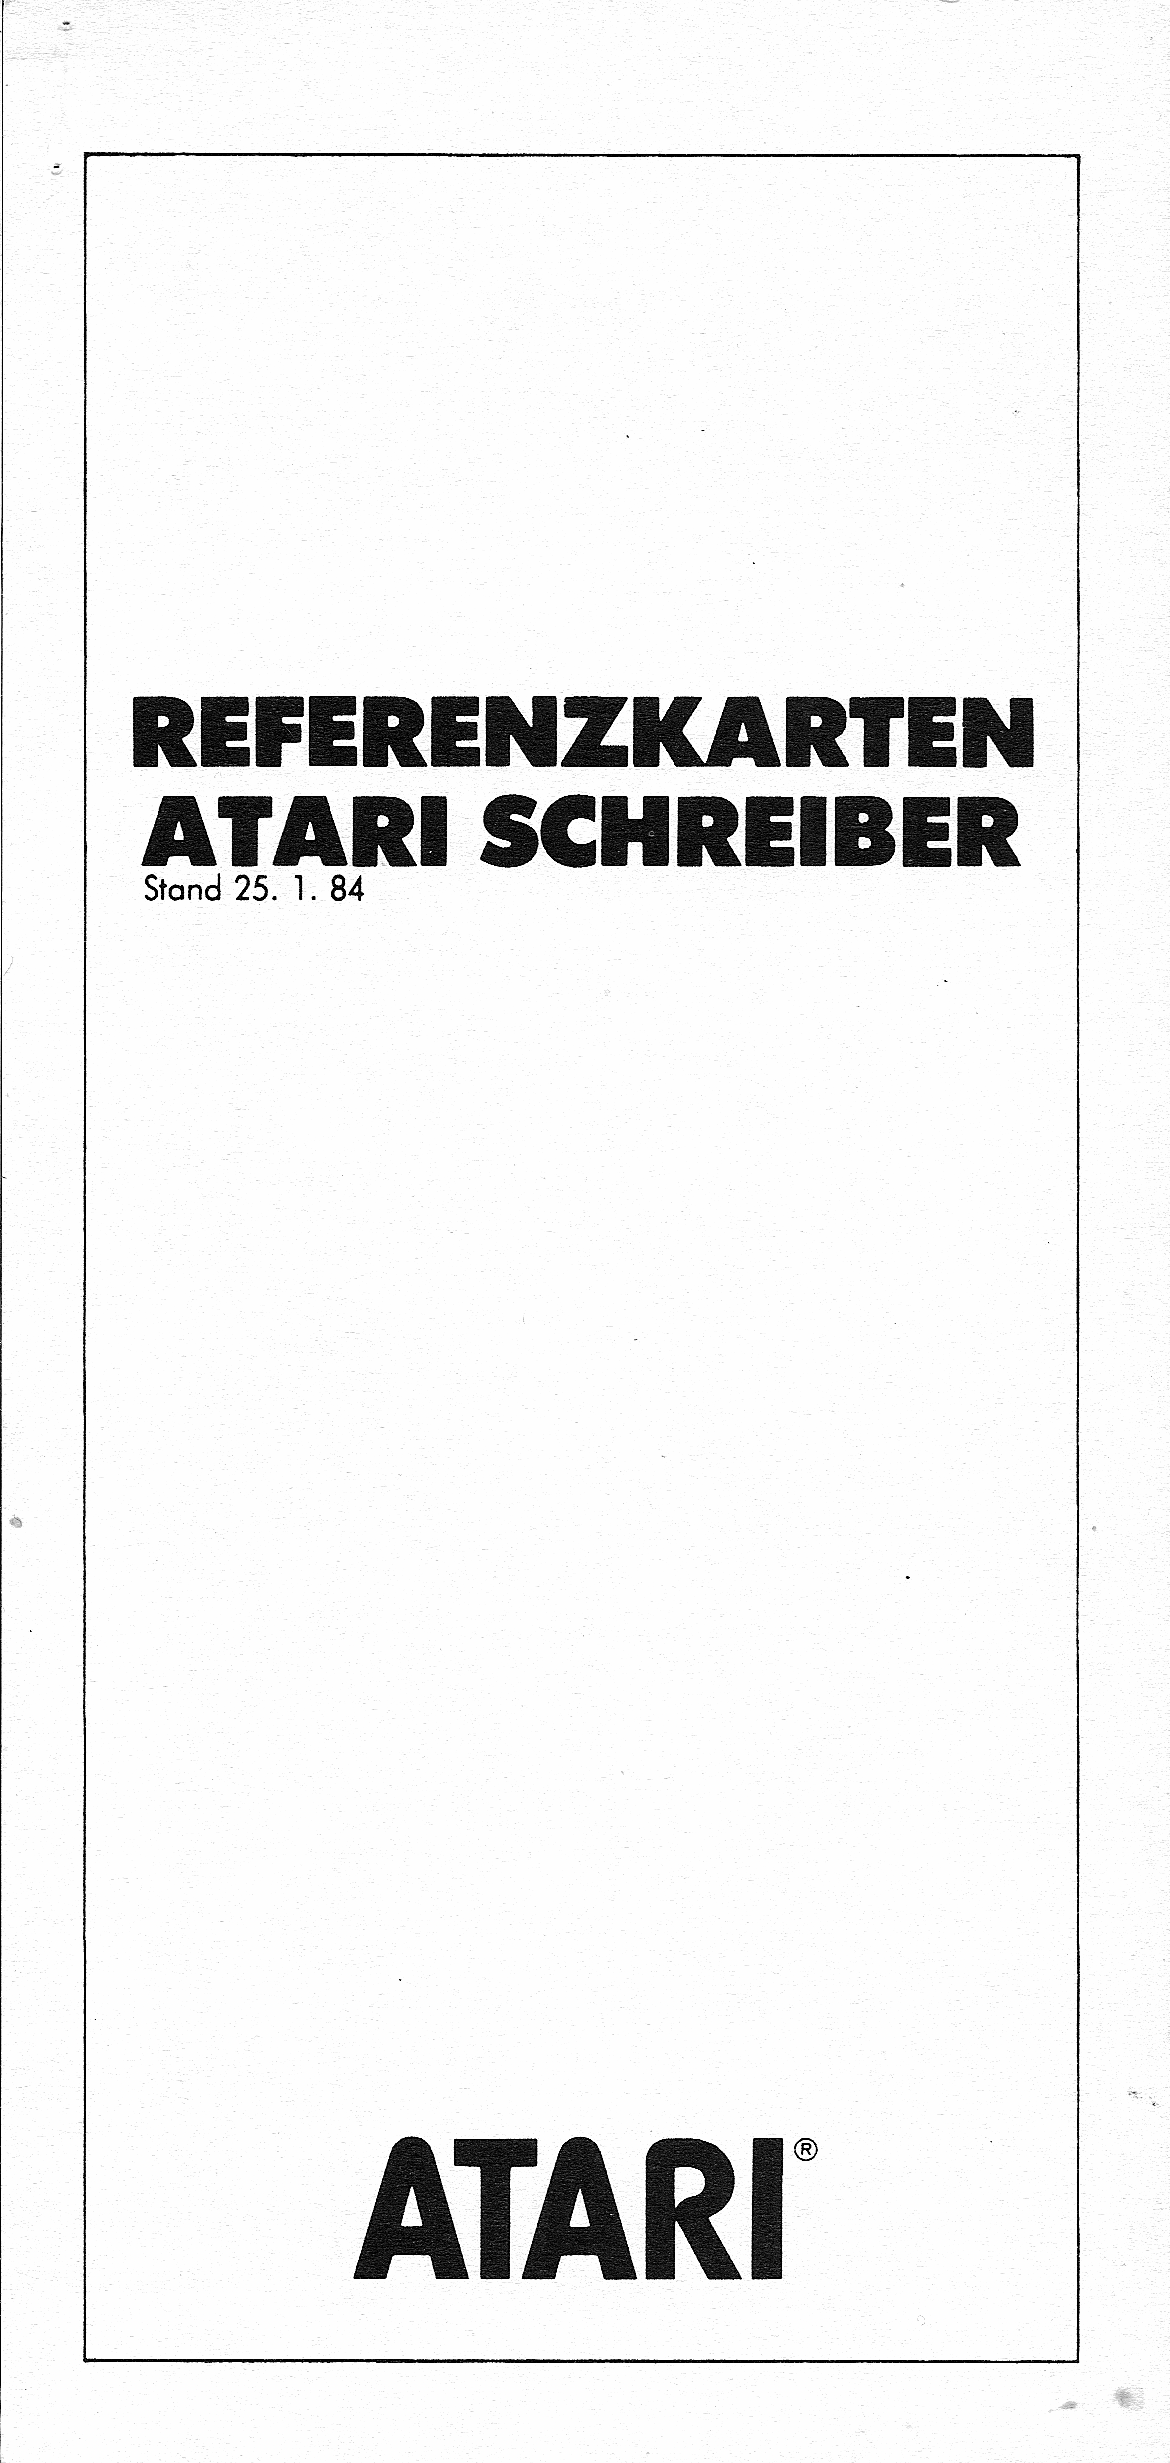 Atari Schreiber/Referenz-Karten_001.png